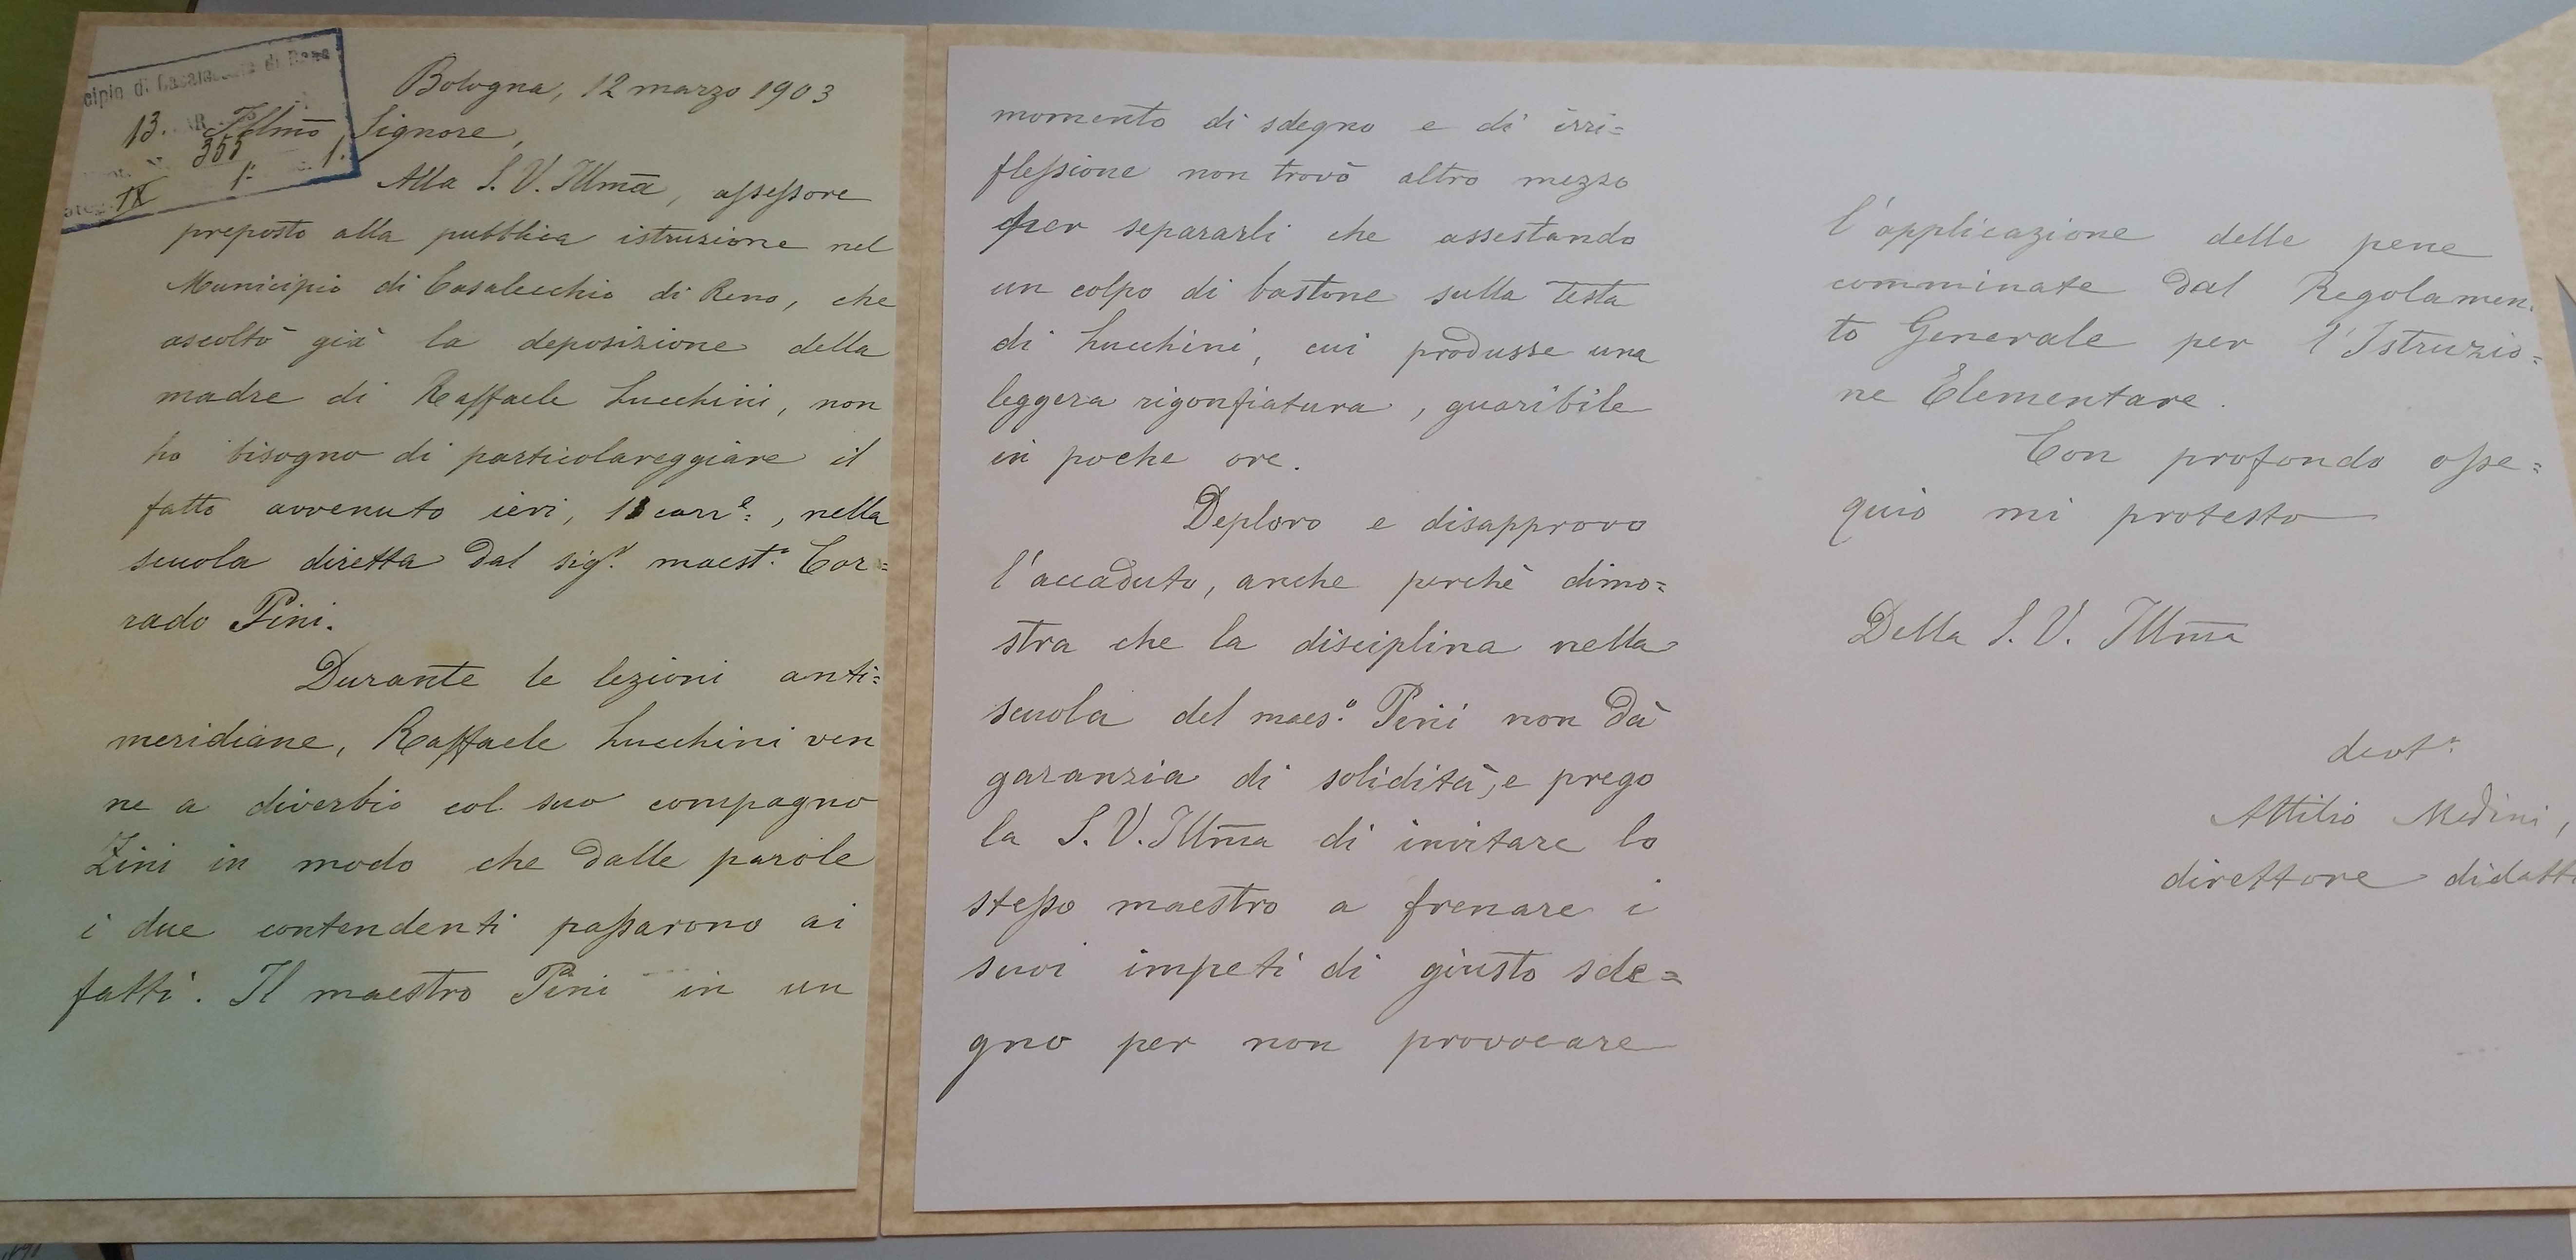 Documenti del 1903 (Archivio storico del Comune di Casalecchio di Reno)